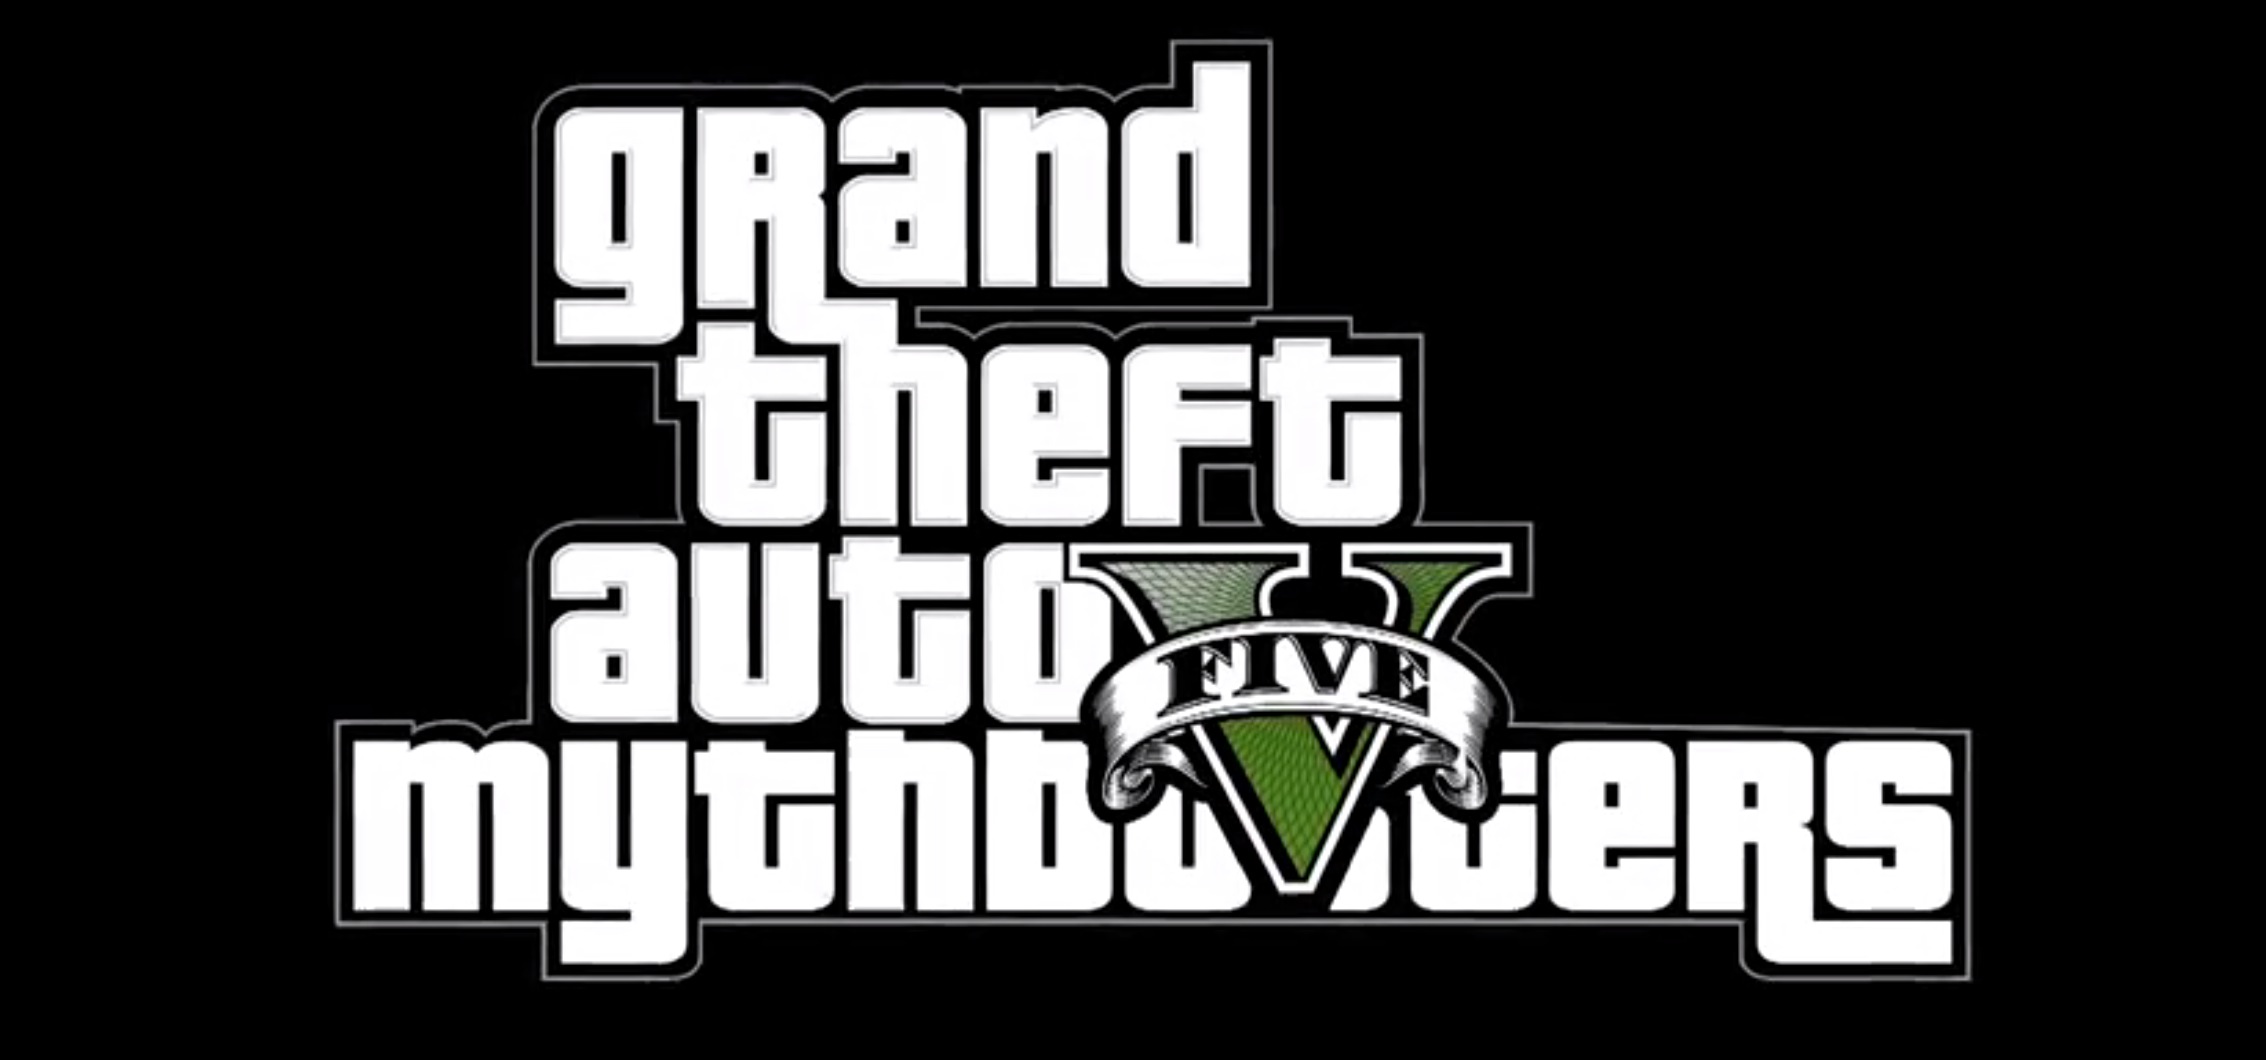 Grand Theft Auto V Mythbusters 4